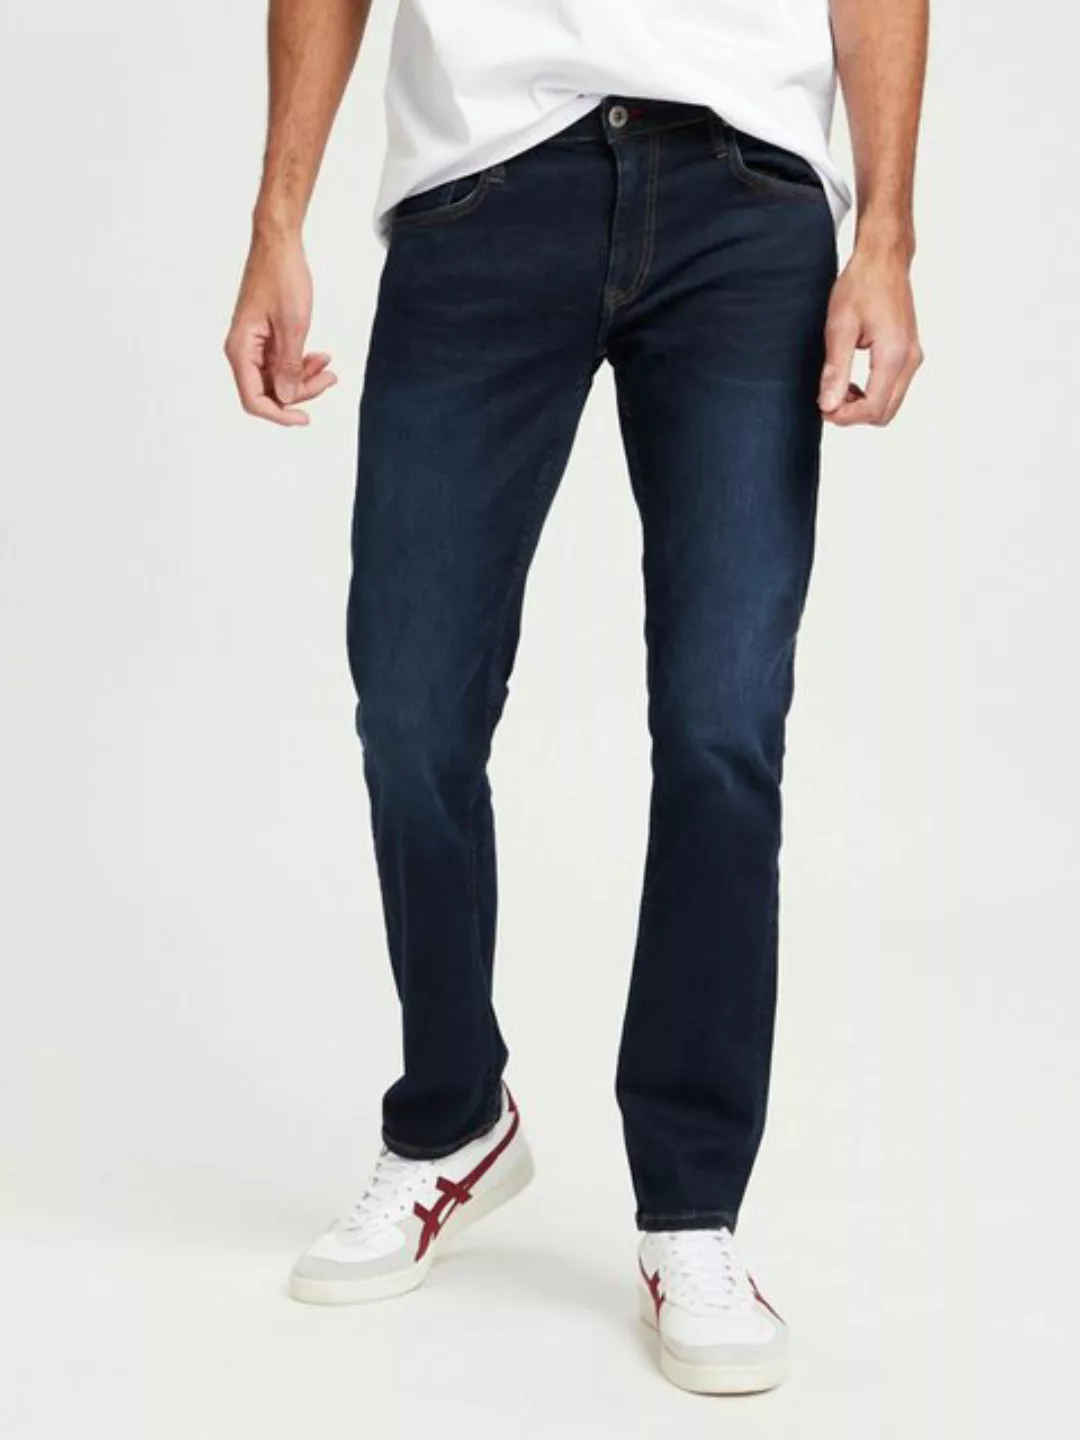 Cross Jeans Herren Jeans Damien - Slim Fit - Blau - Flex Light Blue günstig online kaufen